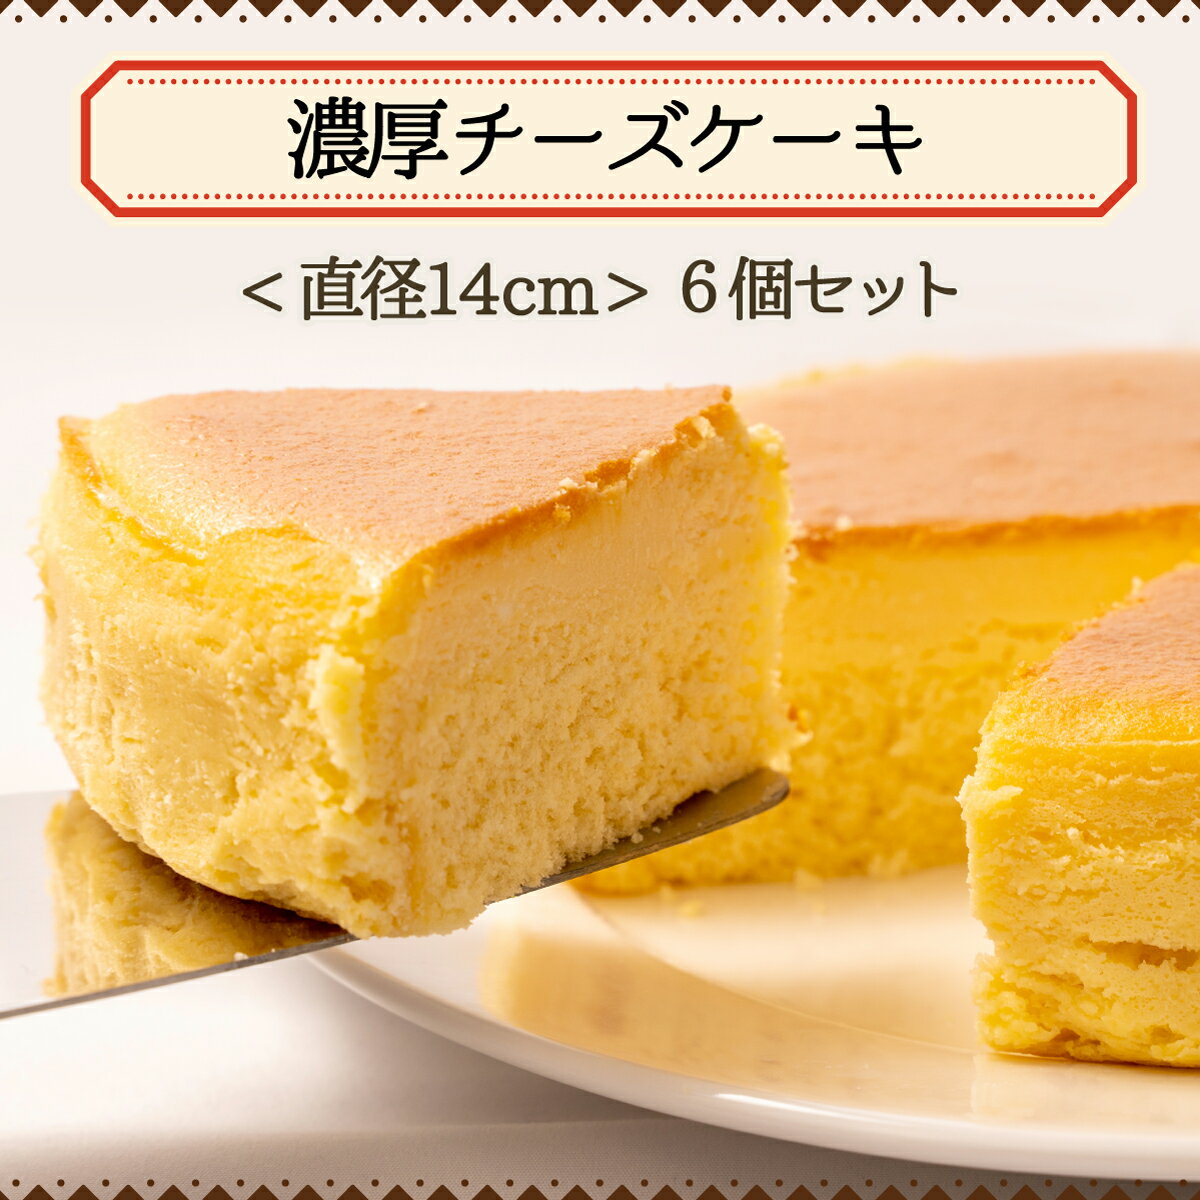 【ふるさと納税】 スイーツ 訳あり 濃厚チーズケーキ 6個セット 洋菓子 工場直売 大容量